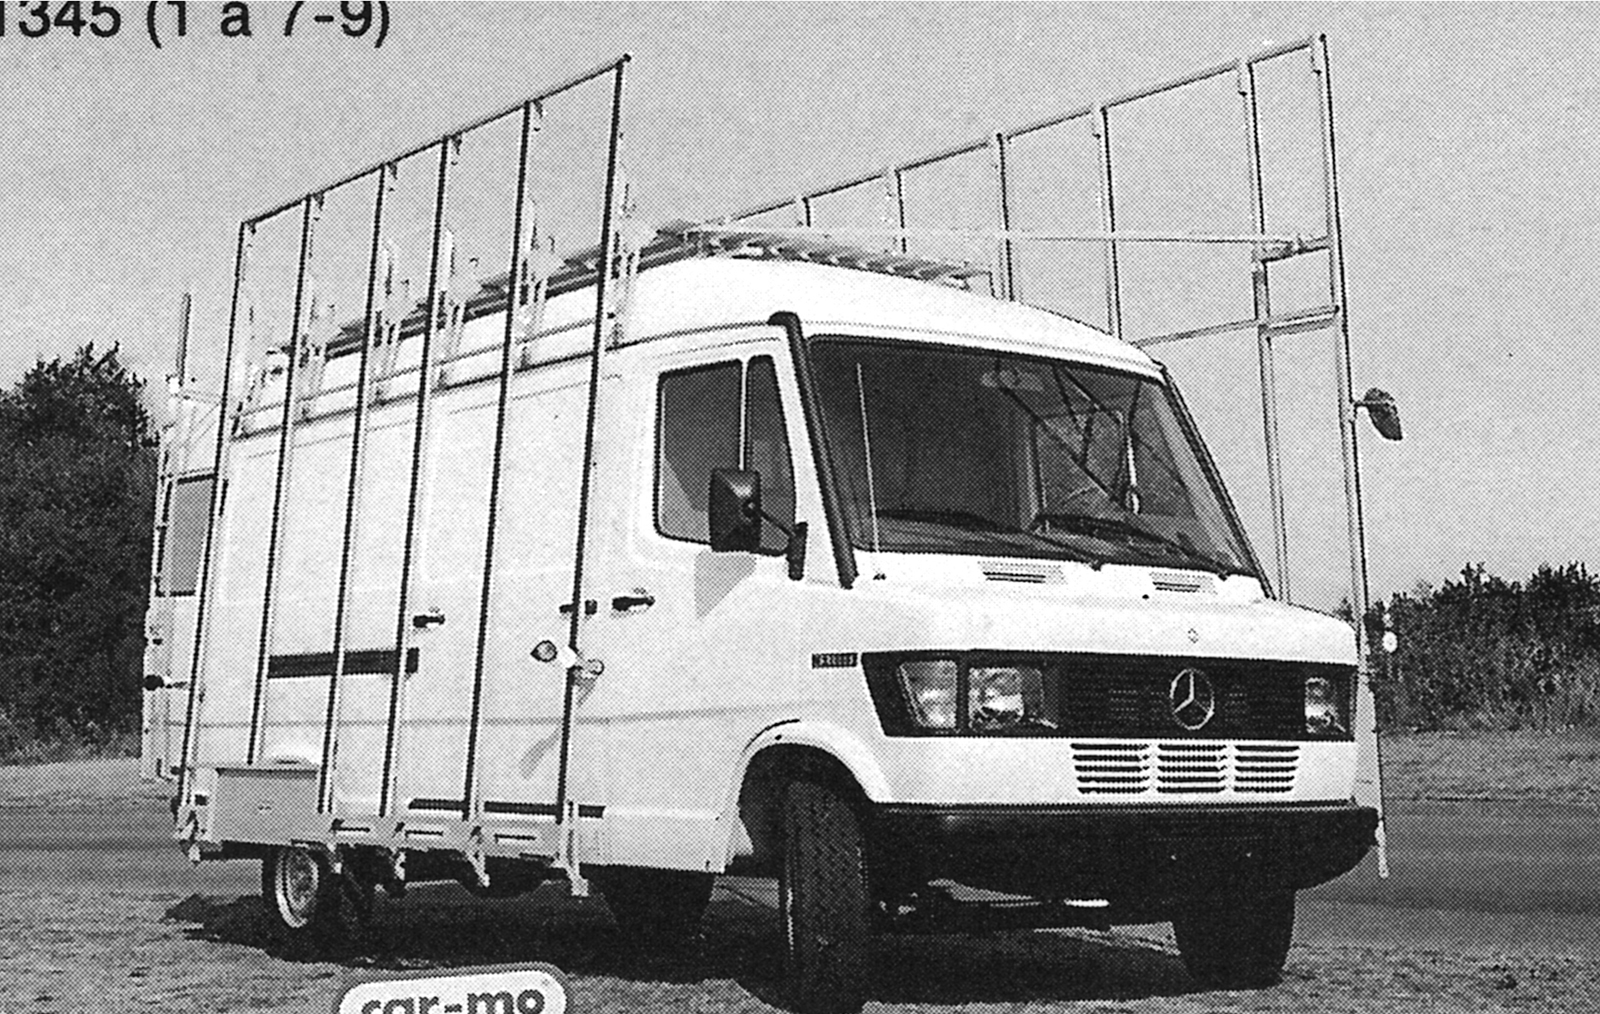 Mercedes Sprinter 307 1989-1995. L'un des derniers fourgon équipé de galeries car-mo posé dans les gouttières du pavillon. Fourgon désigné familièrement par le terme modèle de Brême. Jusqu'en 1984, l'utilitaire léger est fabriqué à Brême, puis dans l'usine de Düsseldorf jusqu'en 1995